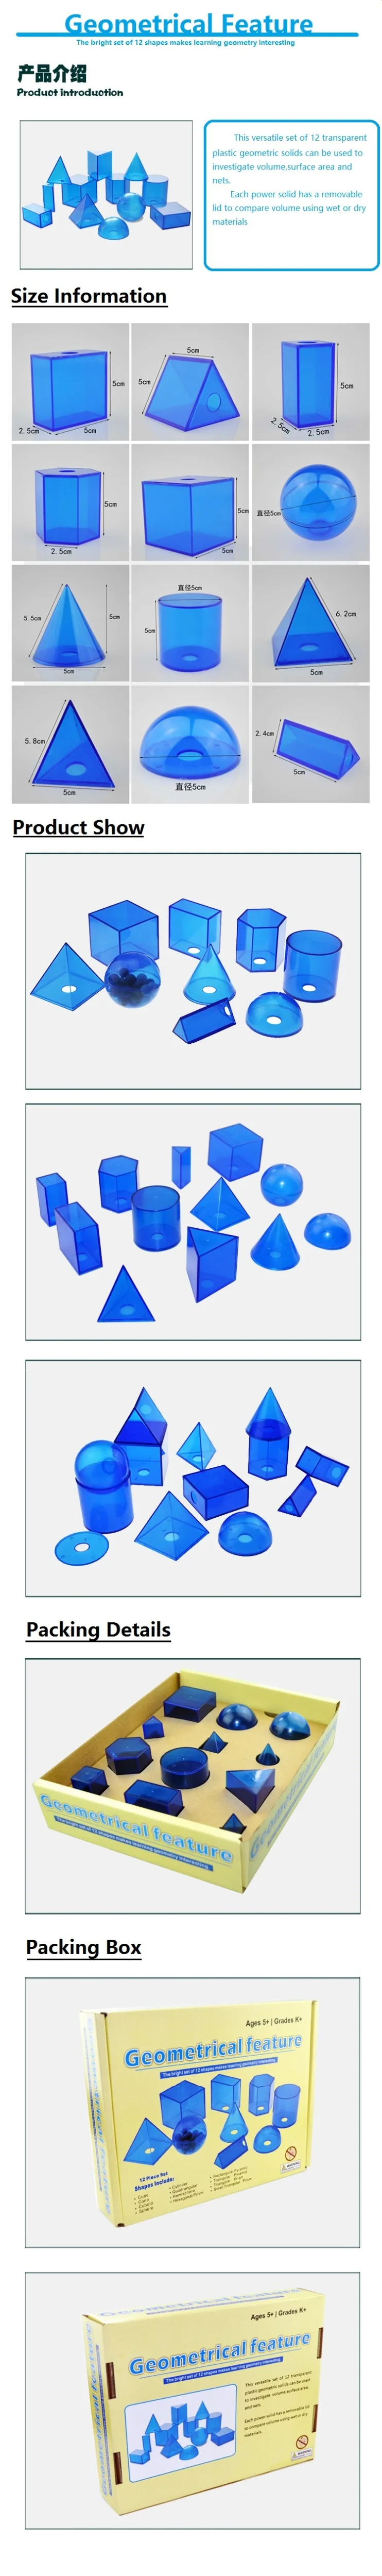 Детские игрушки, обучающая игрушка Монтессори, Геометрическая игрушка, обучающая игрушка, инструмент для обучения математике, Геометрическая особенность, куб, цилиндр